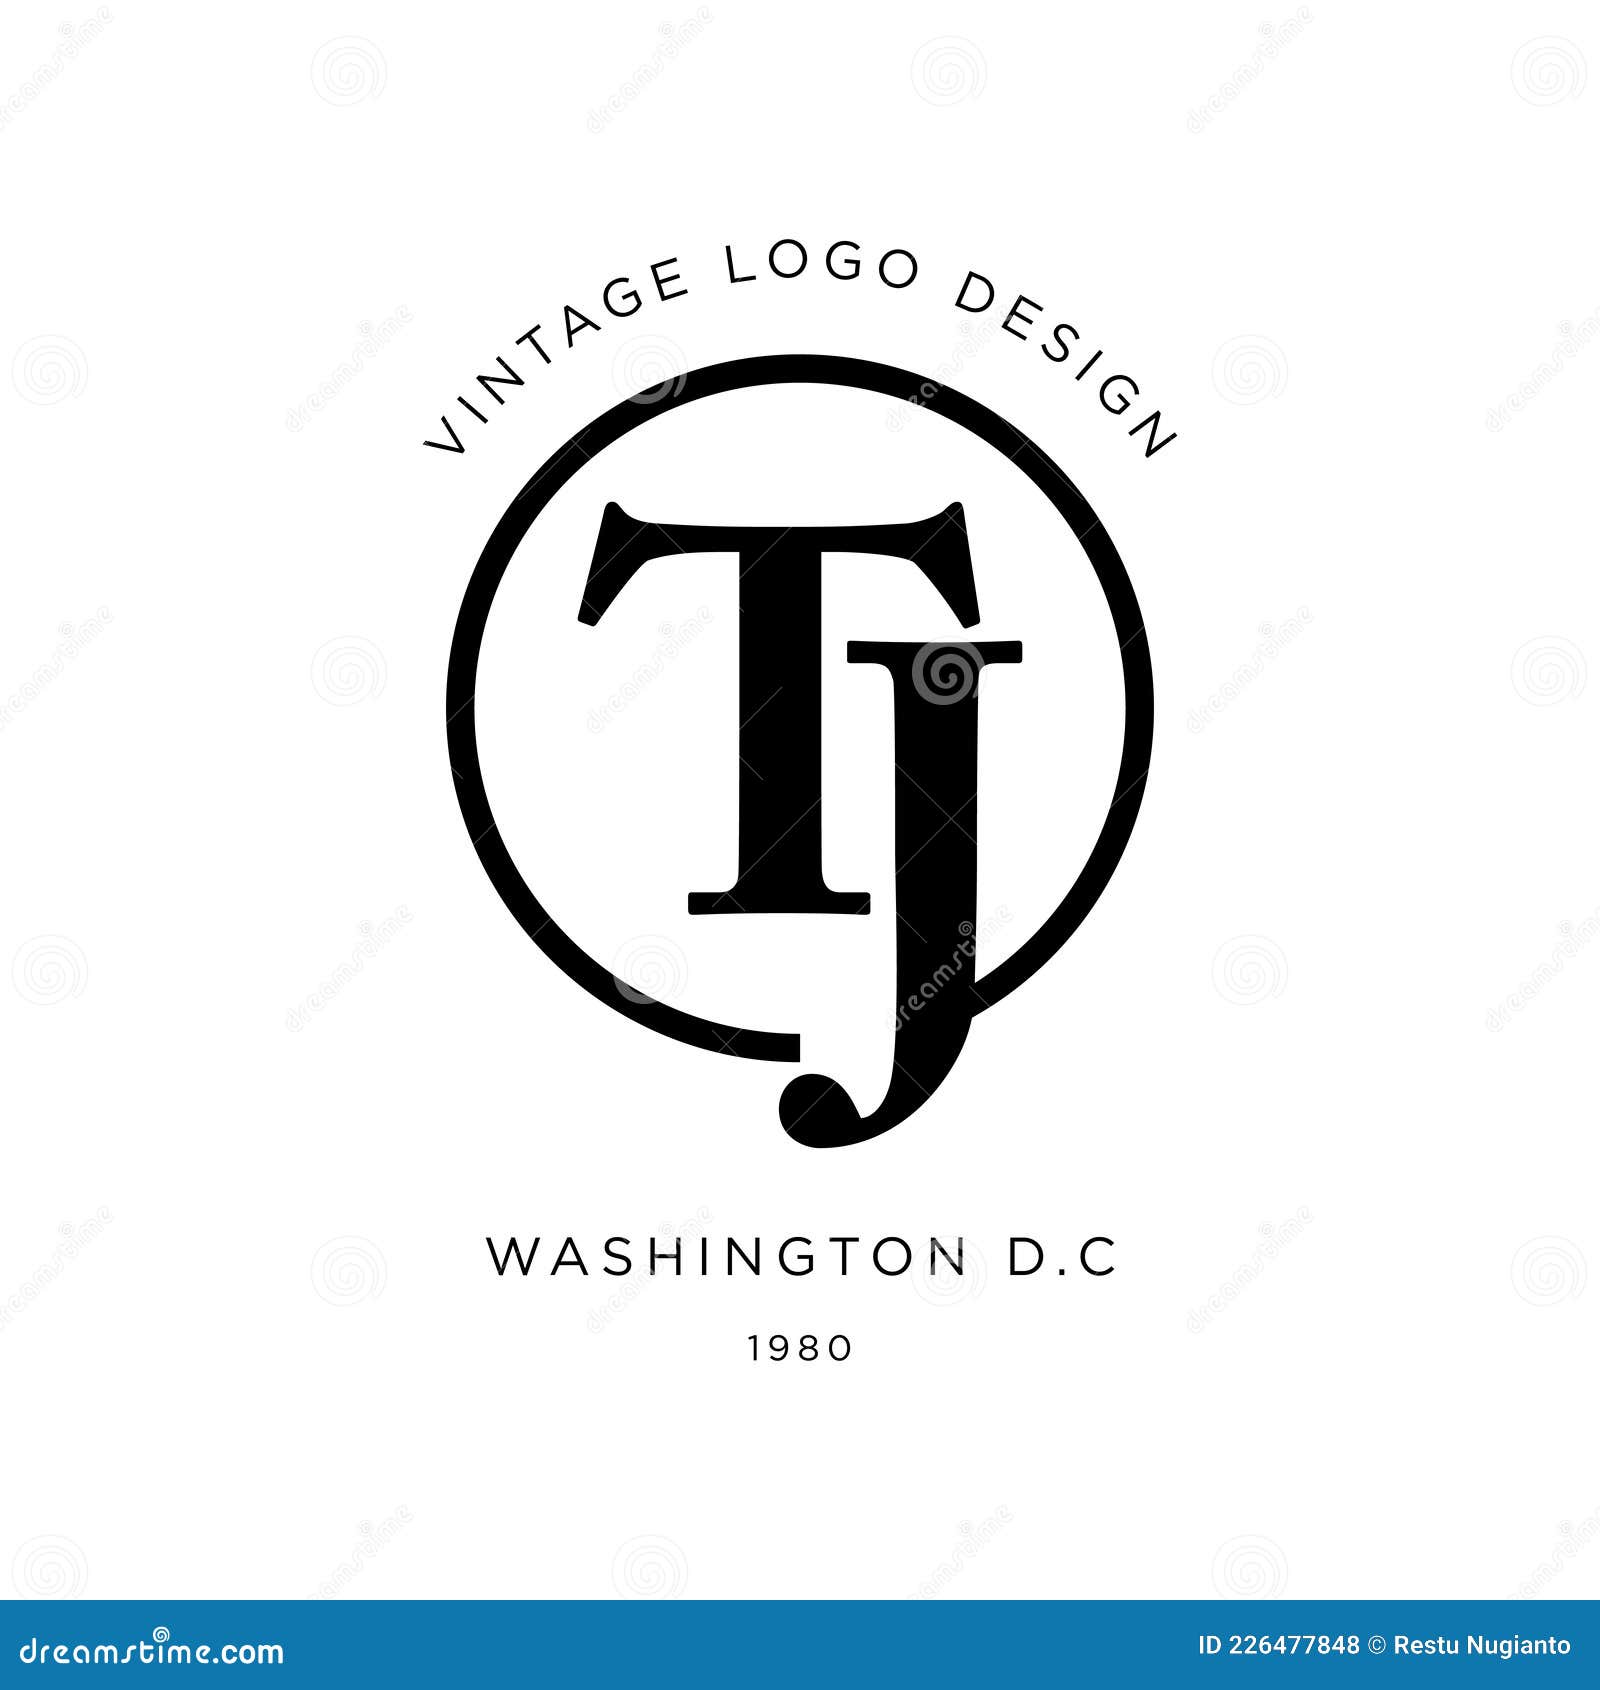 Premium Vector  Initial letter lv logo design monogram creative